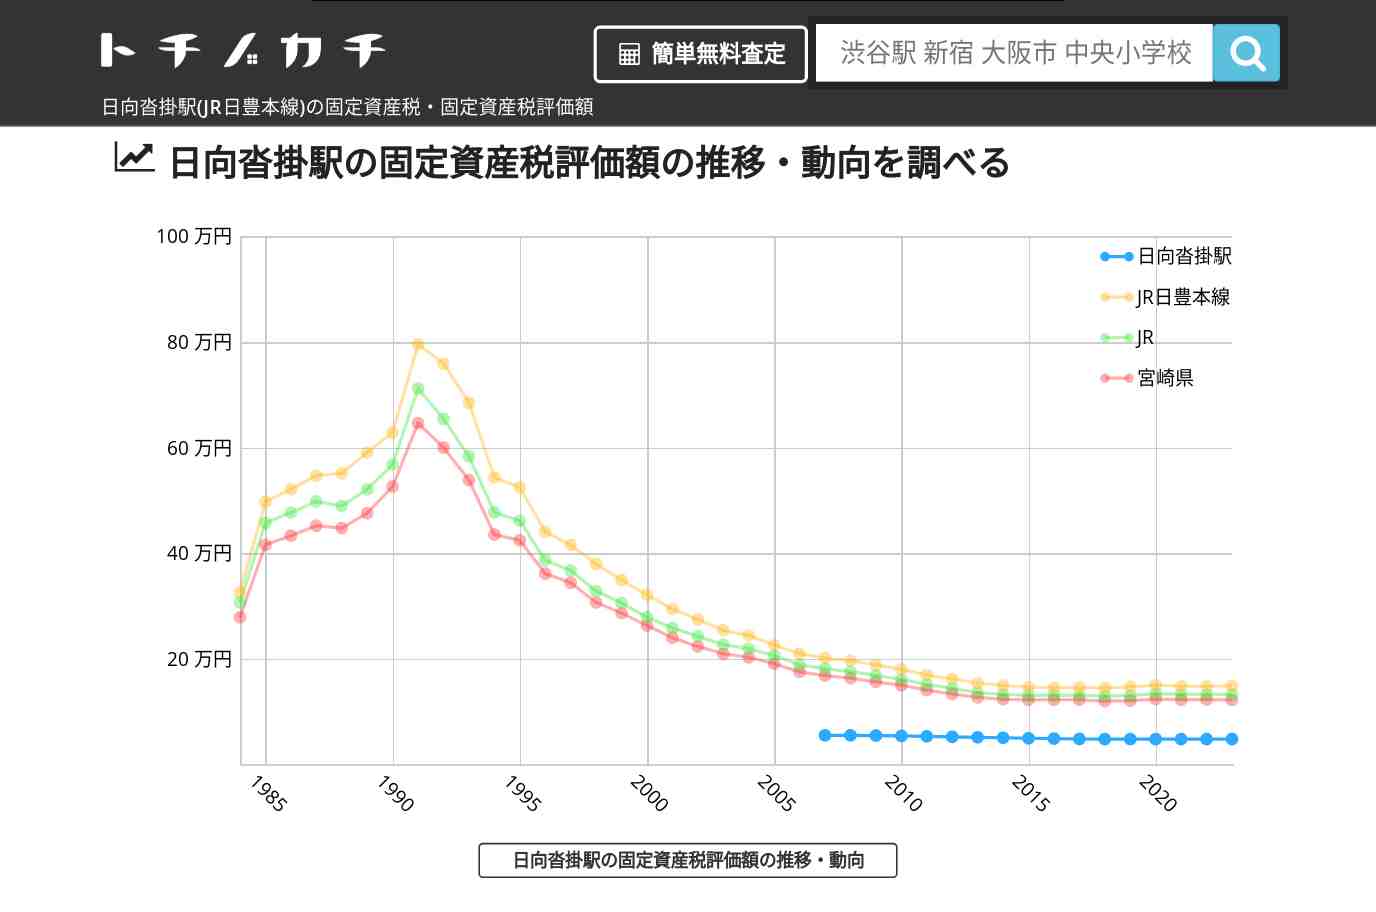 日向沓掛駅(JR日豊本線)の固定資産税・固定資産税評価額 | トチノカチ